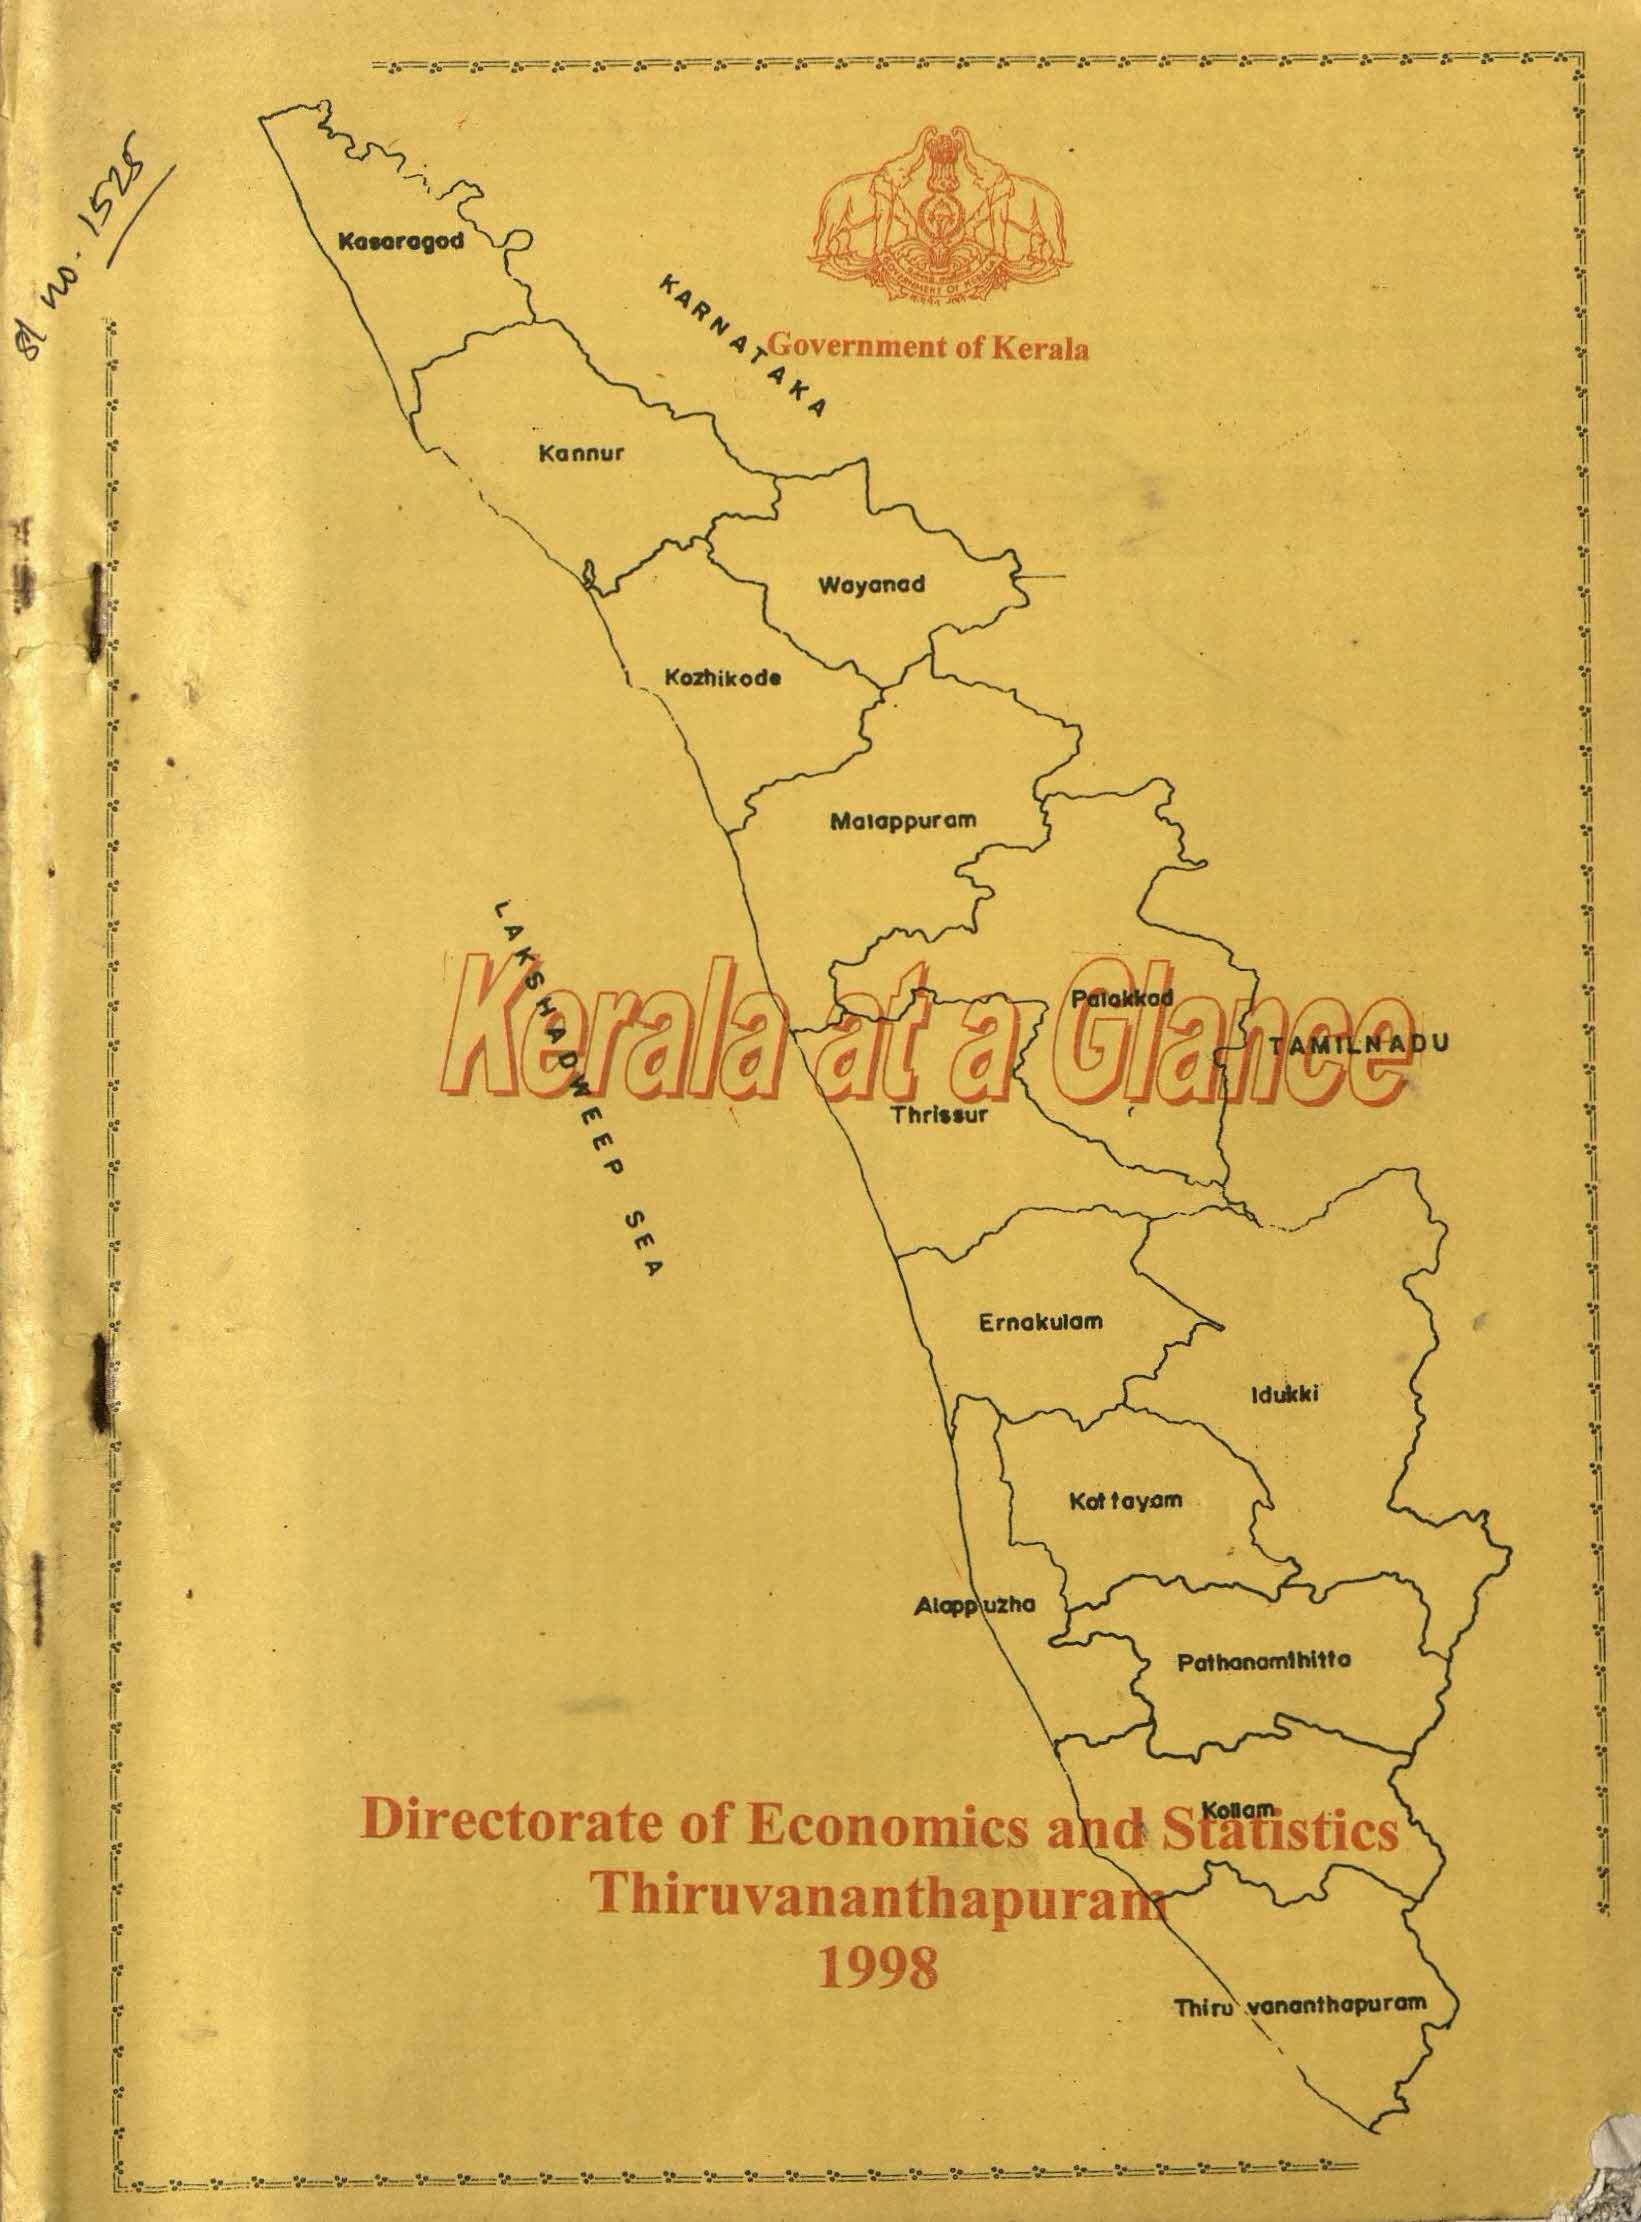 Kerala at a Glance 1998